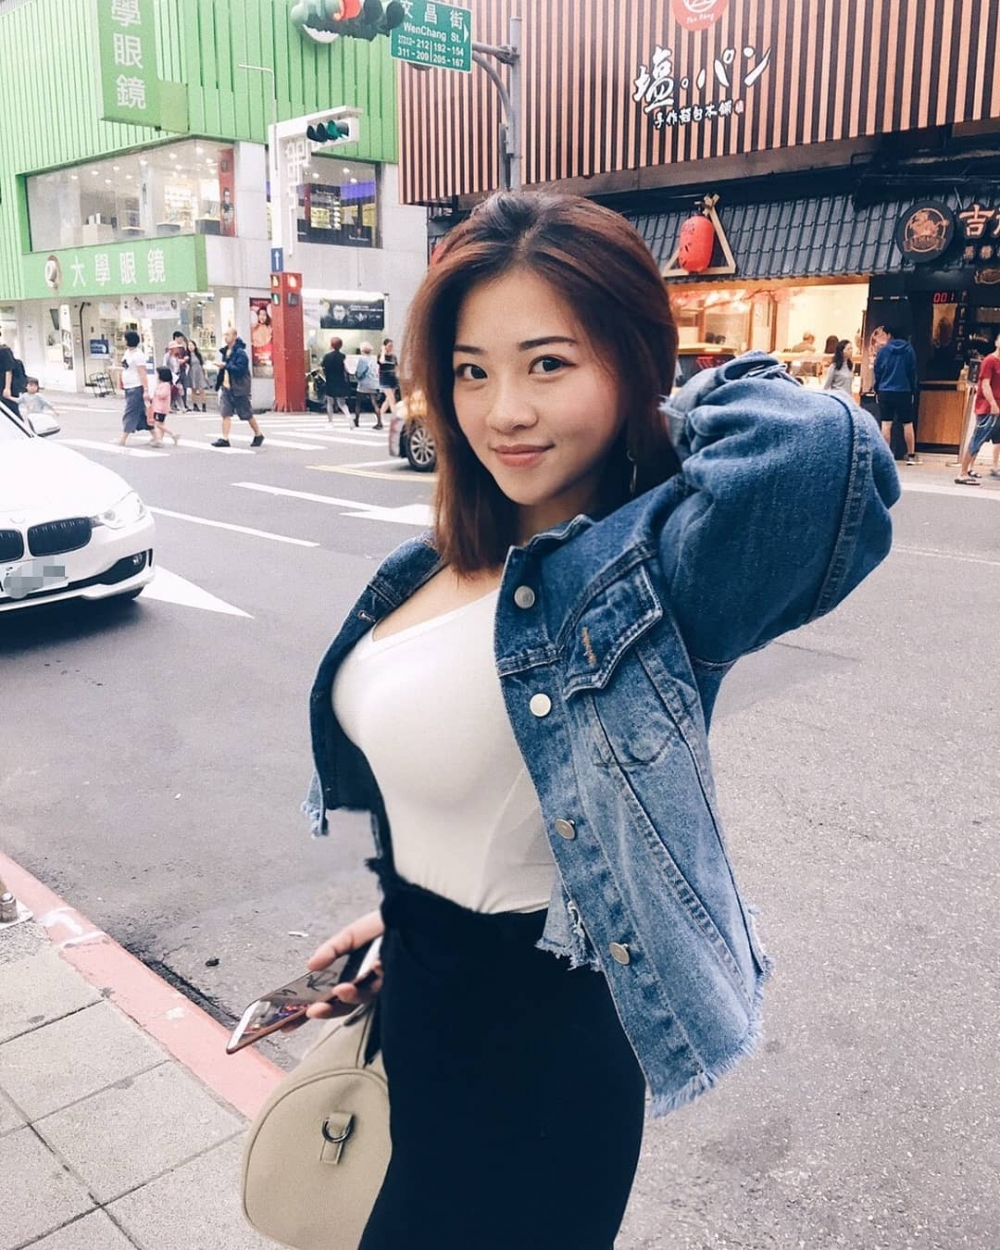 韩国大奶网络美女街头生活照比基尼性感图片